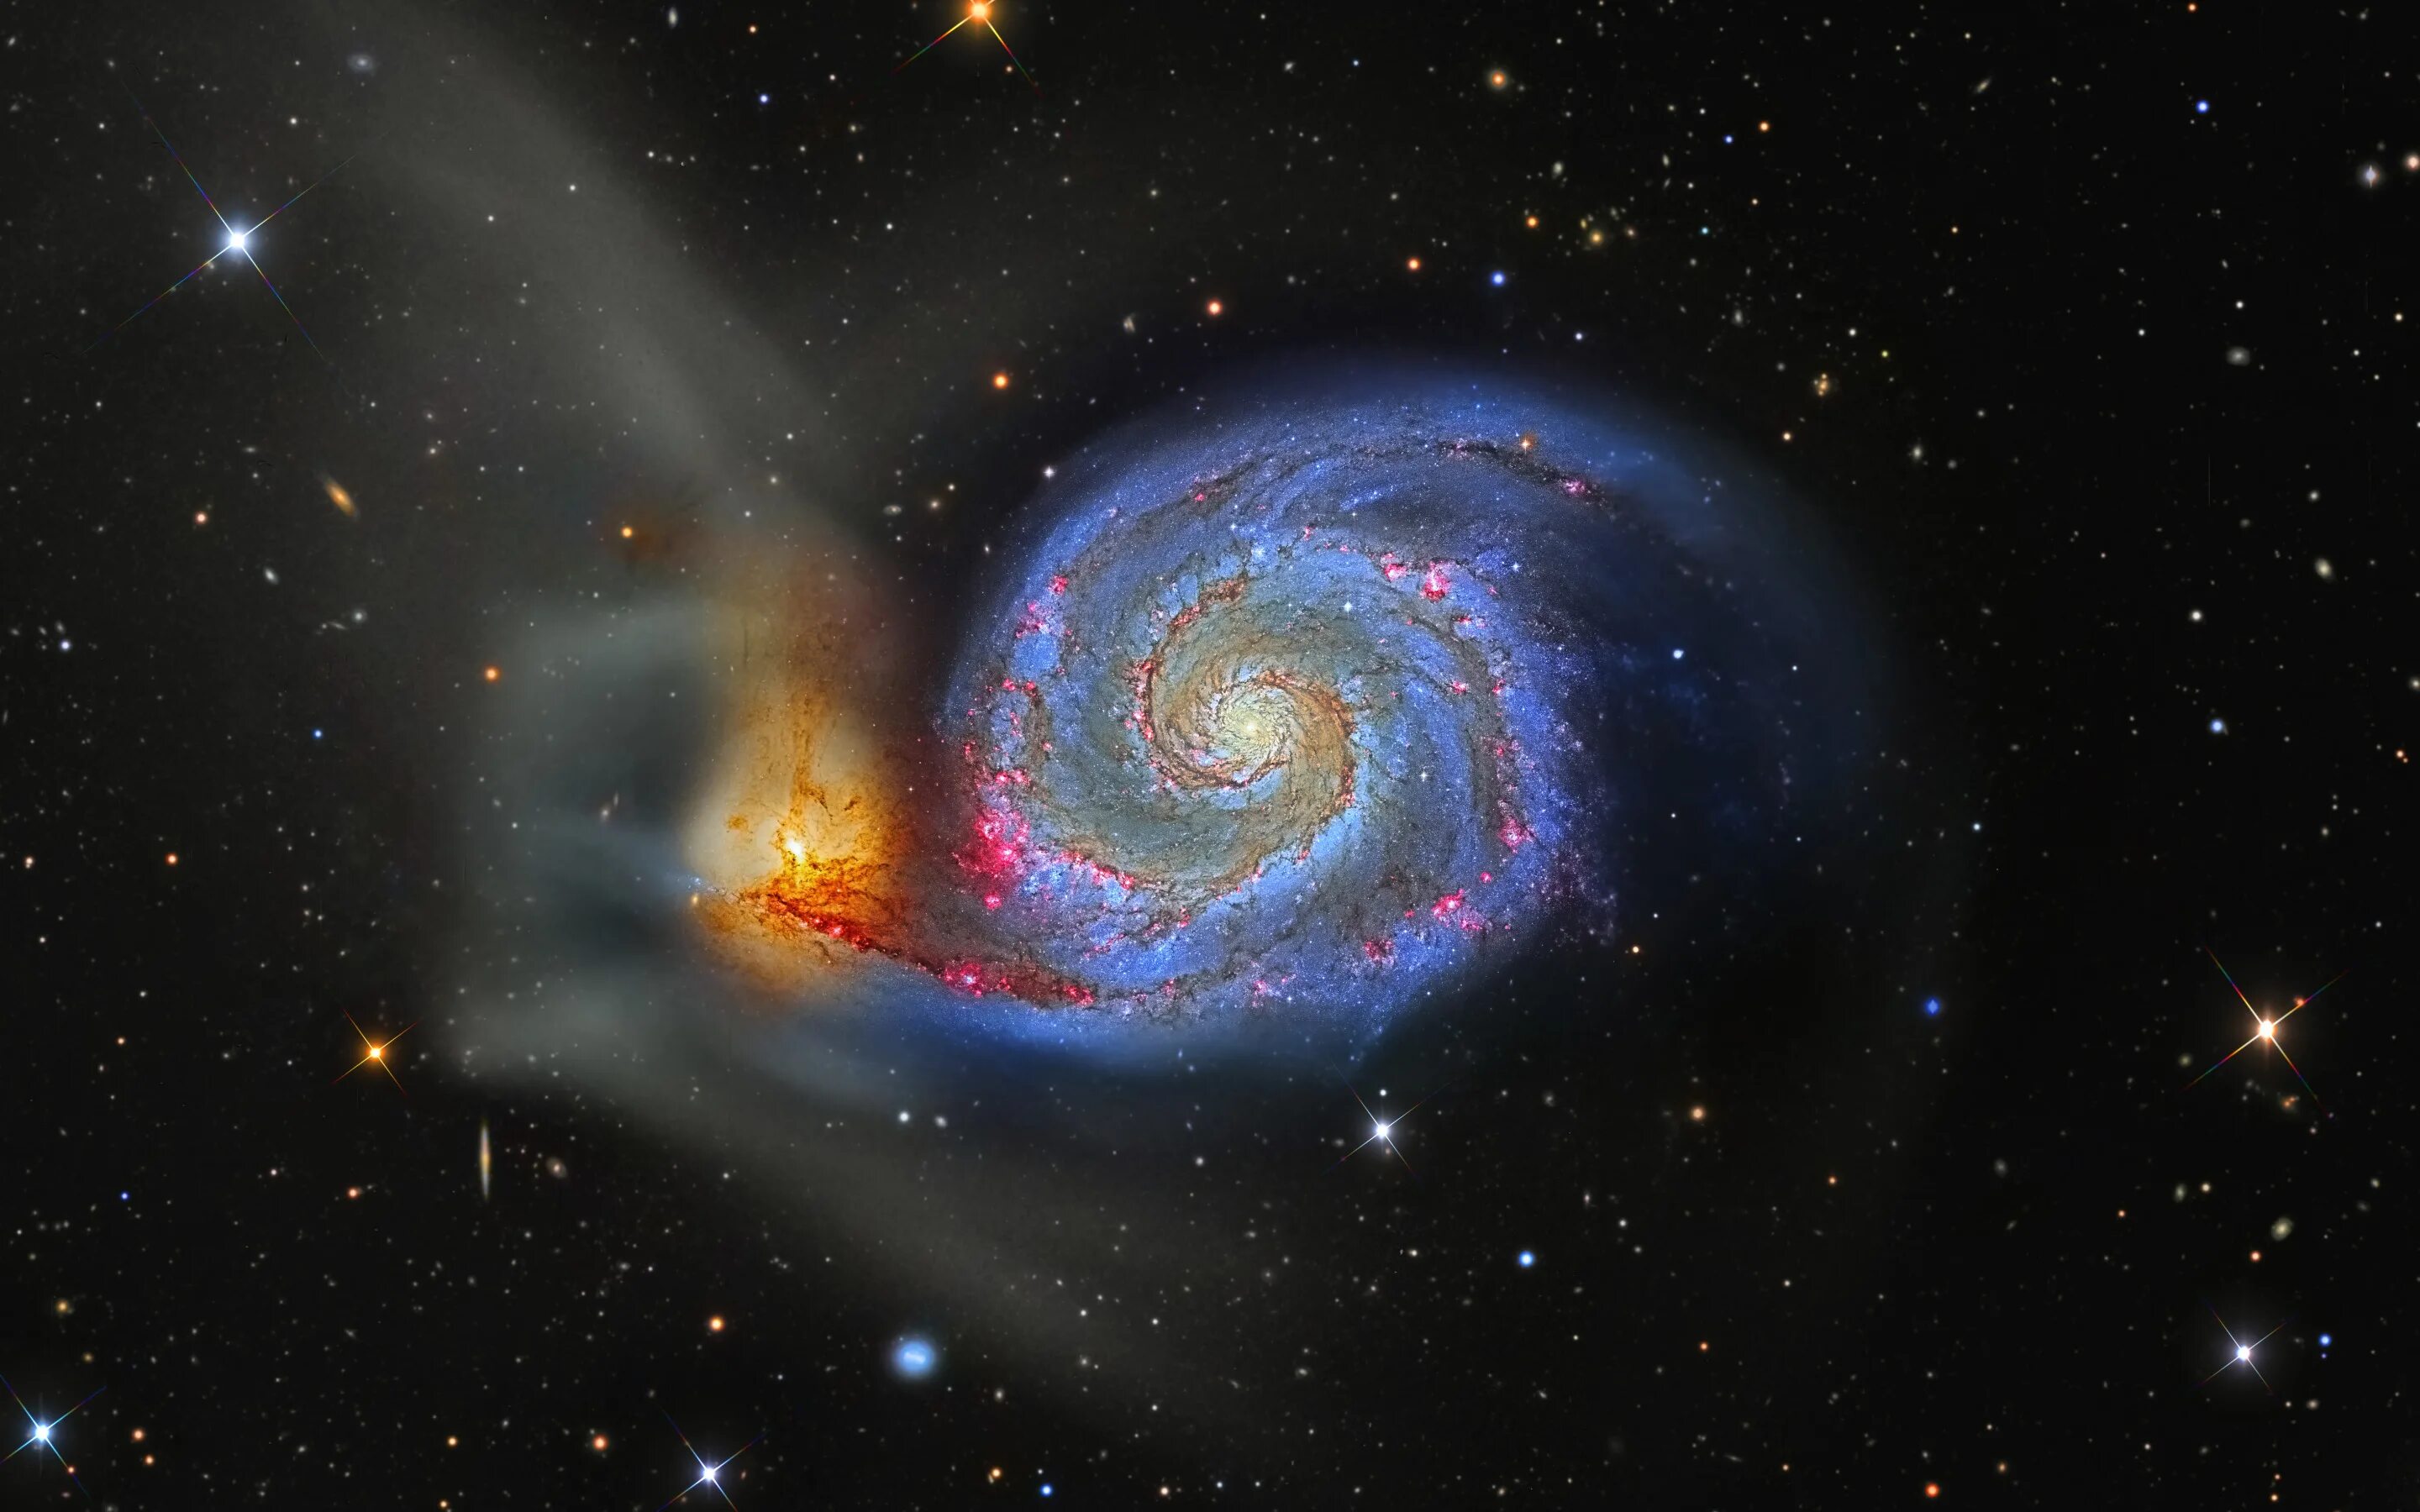 Галактика водоворот м51. Галактика водоворот в созвездии гончих псов. М51 водоворот. Галактика «водоворот» (m 51 или NGC 5194). Гигантская звездная система